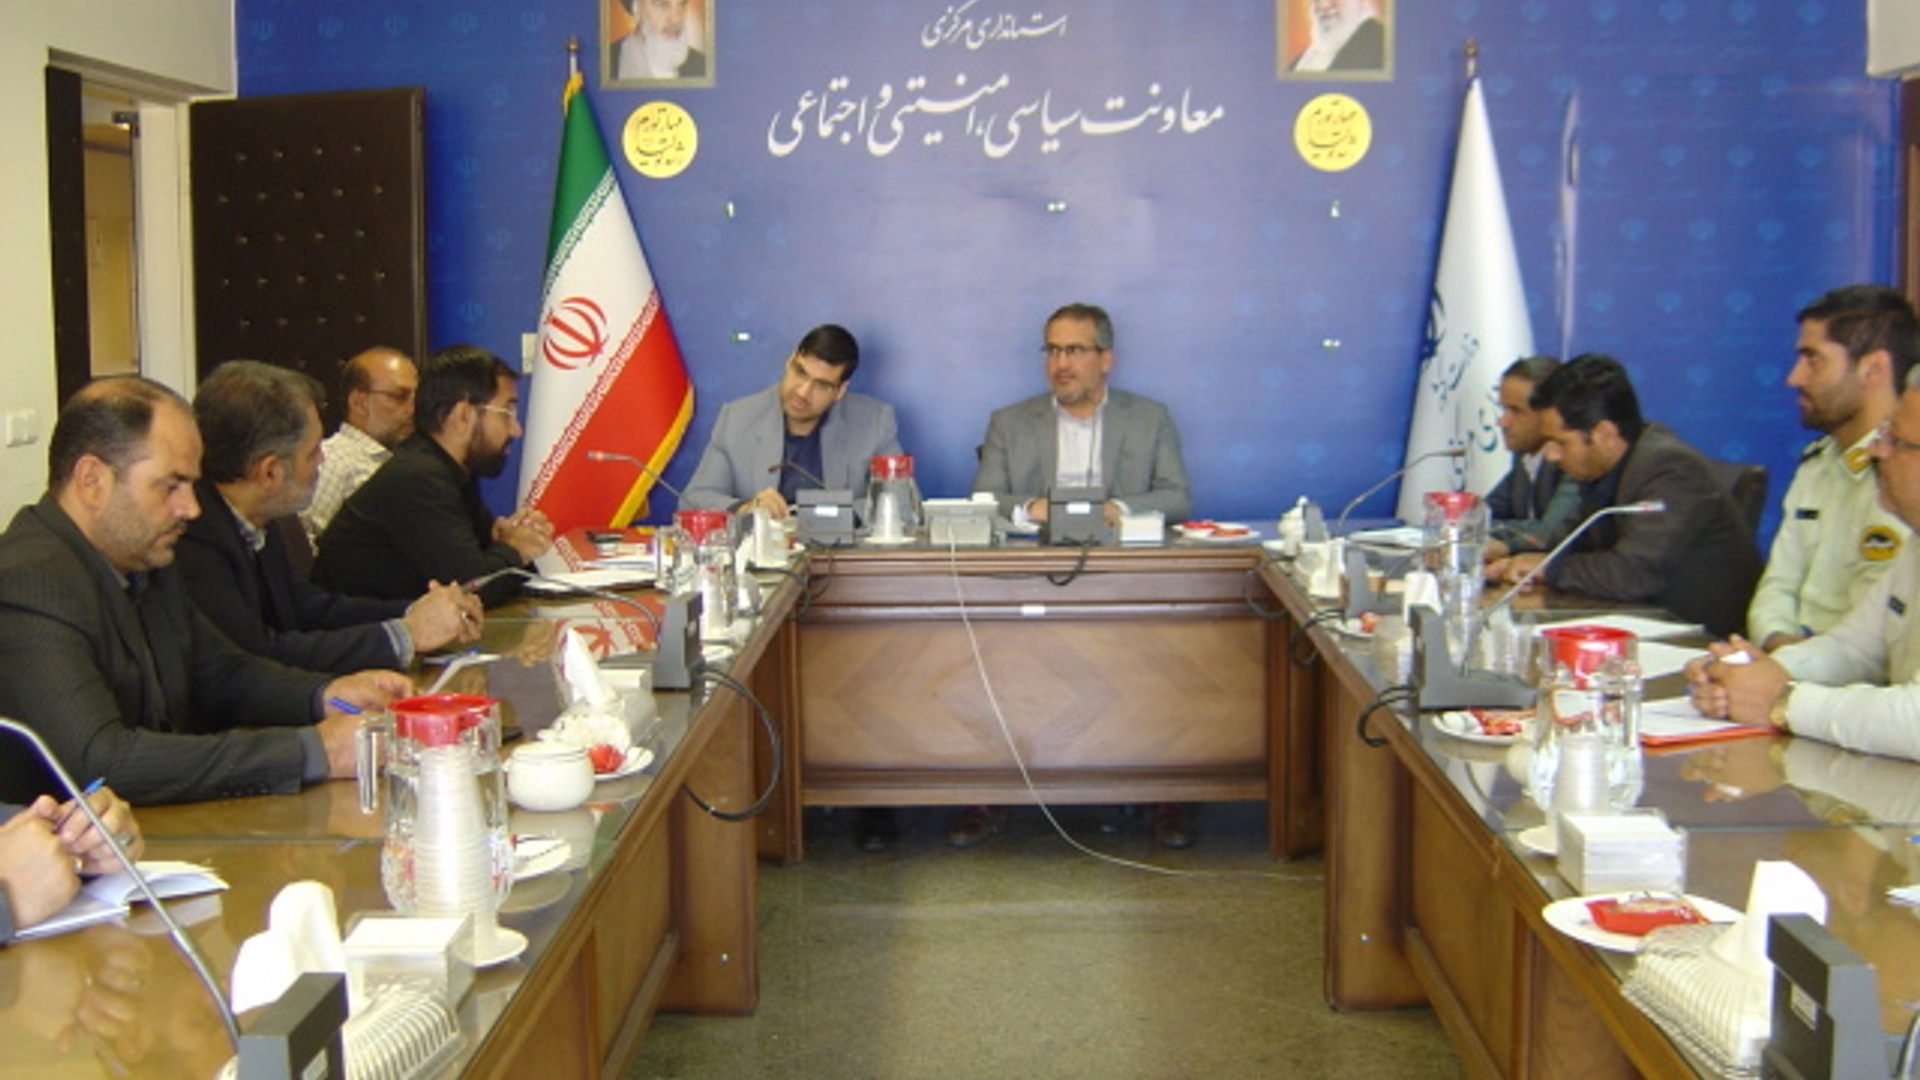 جلسه گشت محله محور بسیج (رضویون) در ساعت 30-8 صبح روز دوشنبه مورخ 23-5-1402 به ریاست آقای رحیمی تبار مدیر کل امنیتی و انتظامی برگزار گردید.